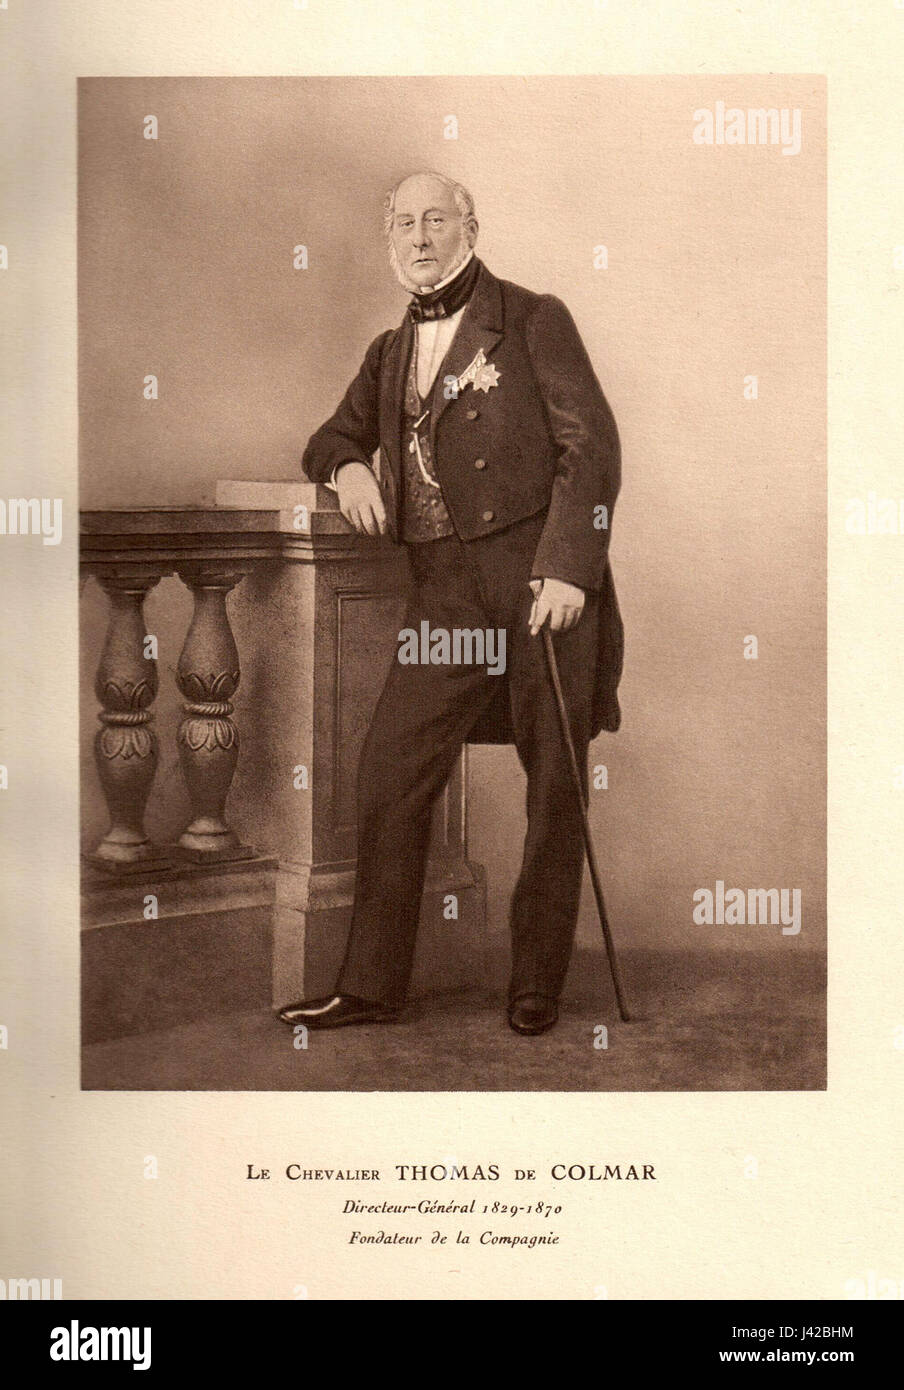 Le Chevalier Thomas de Colmar Stock Photo